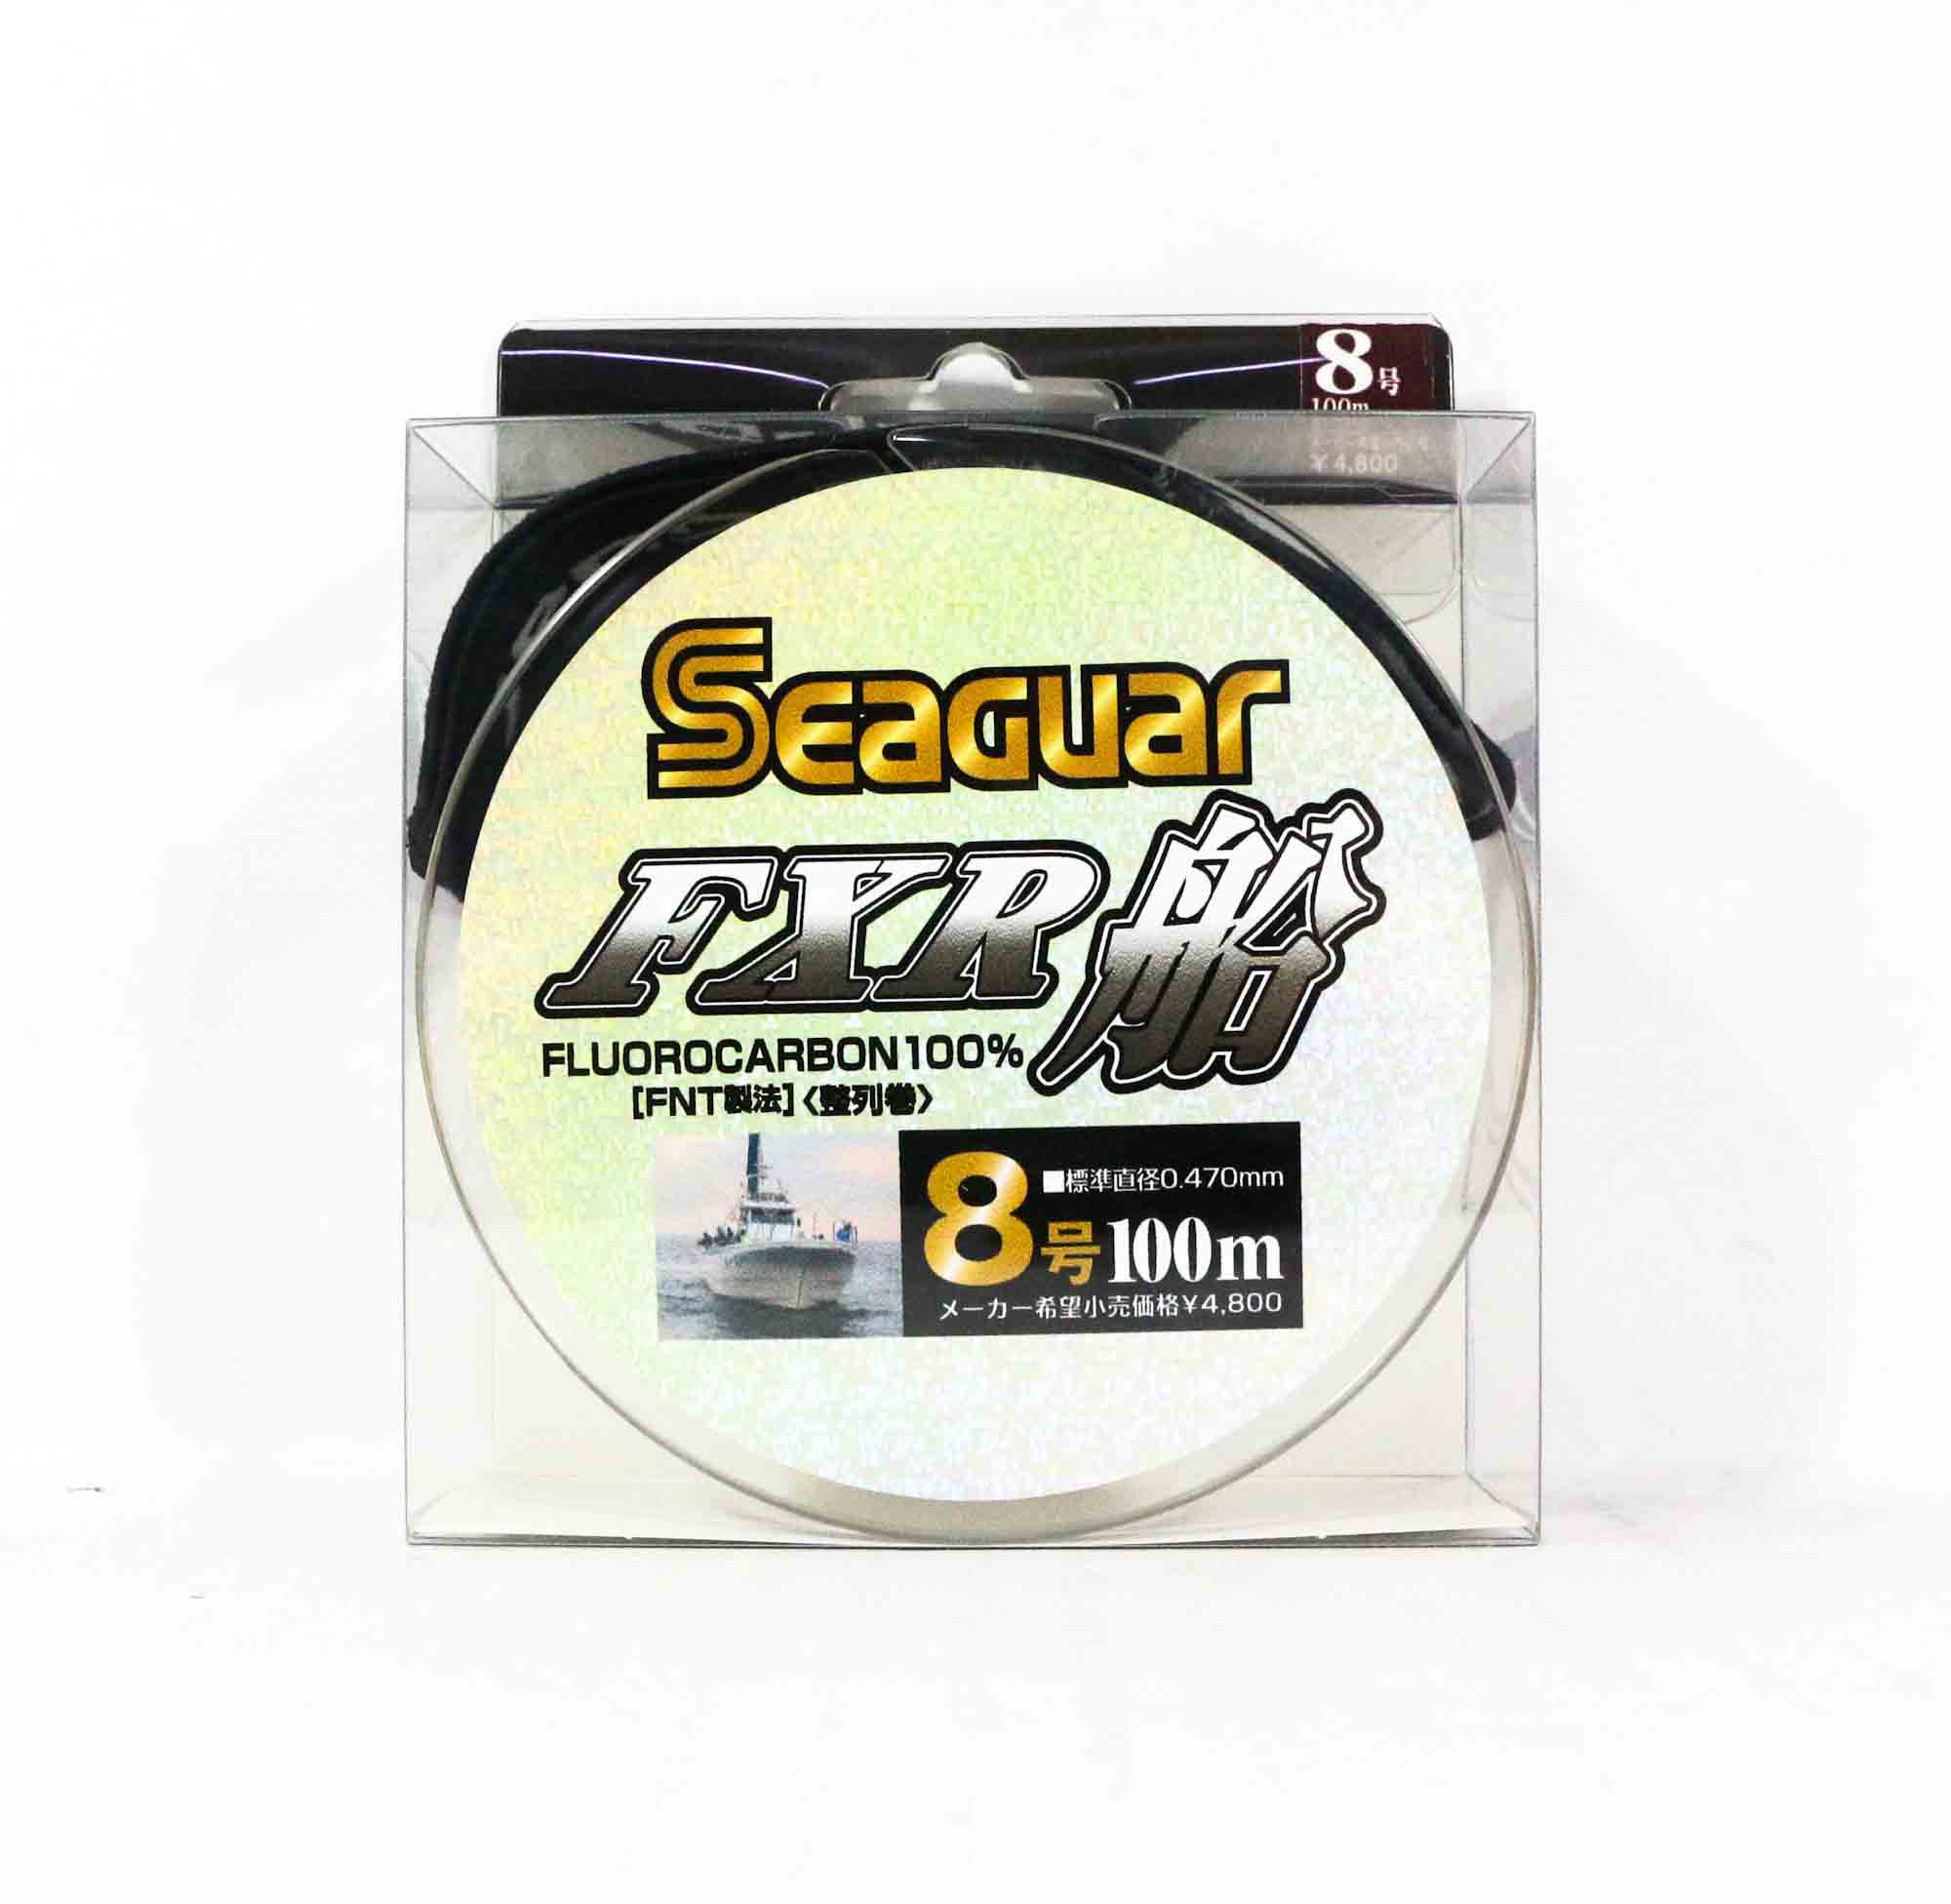 Seaguar FXR Fluorocarbon Leader Line 100m Size 8 30lb 9344 